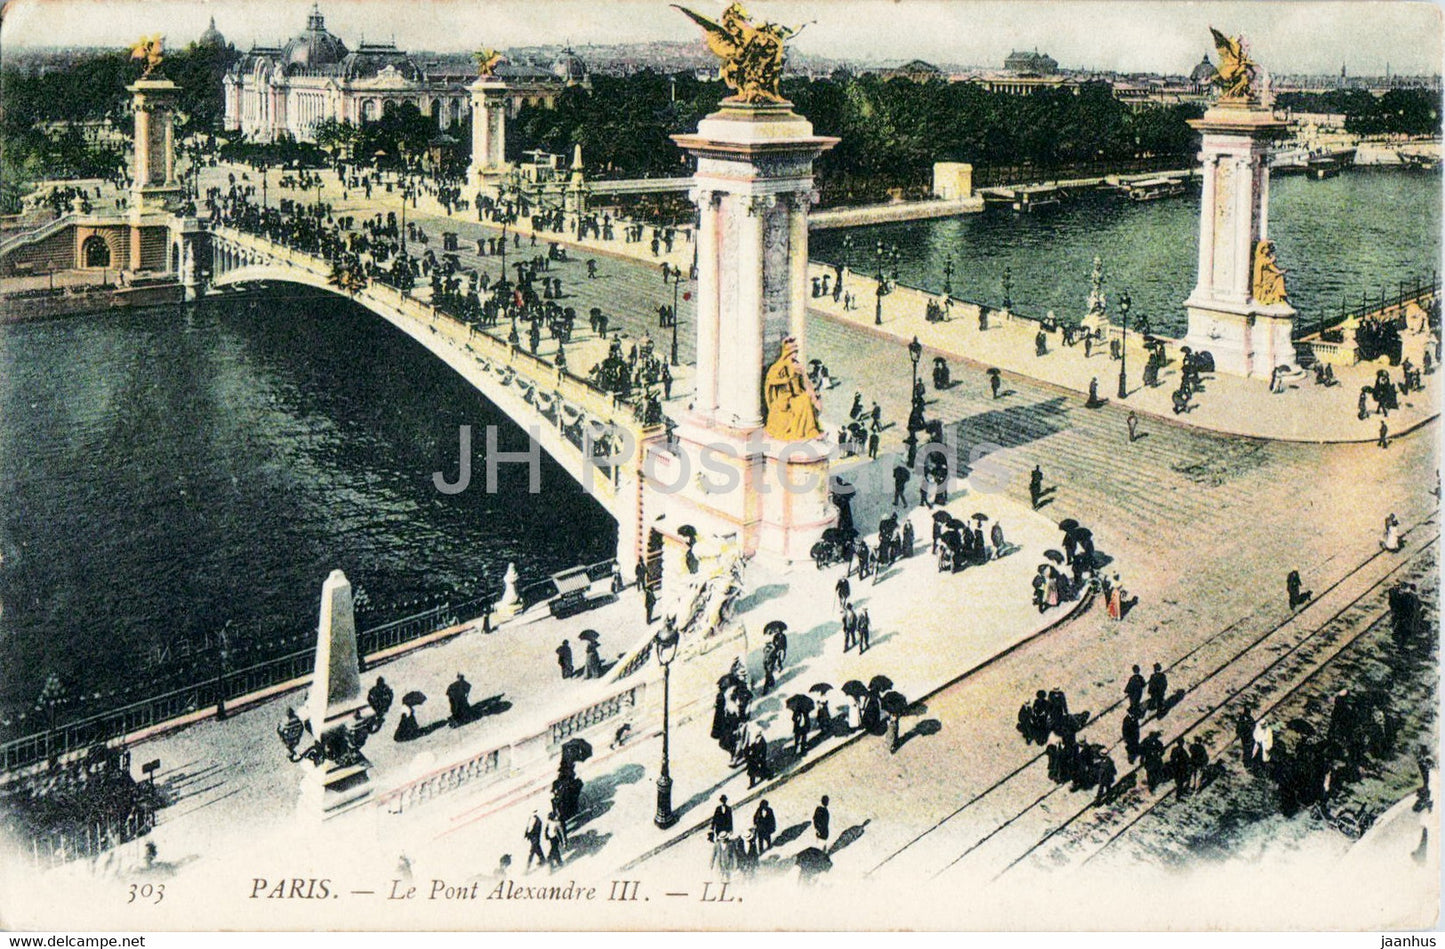 Paris - Le Pont de Alexandre III - bridge - 303 - old postcard - 1912 - France - used - JH Postcards